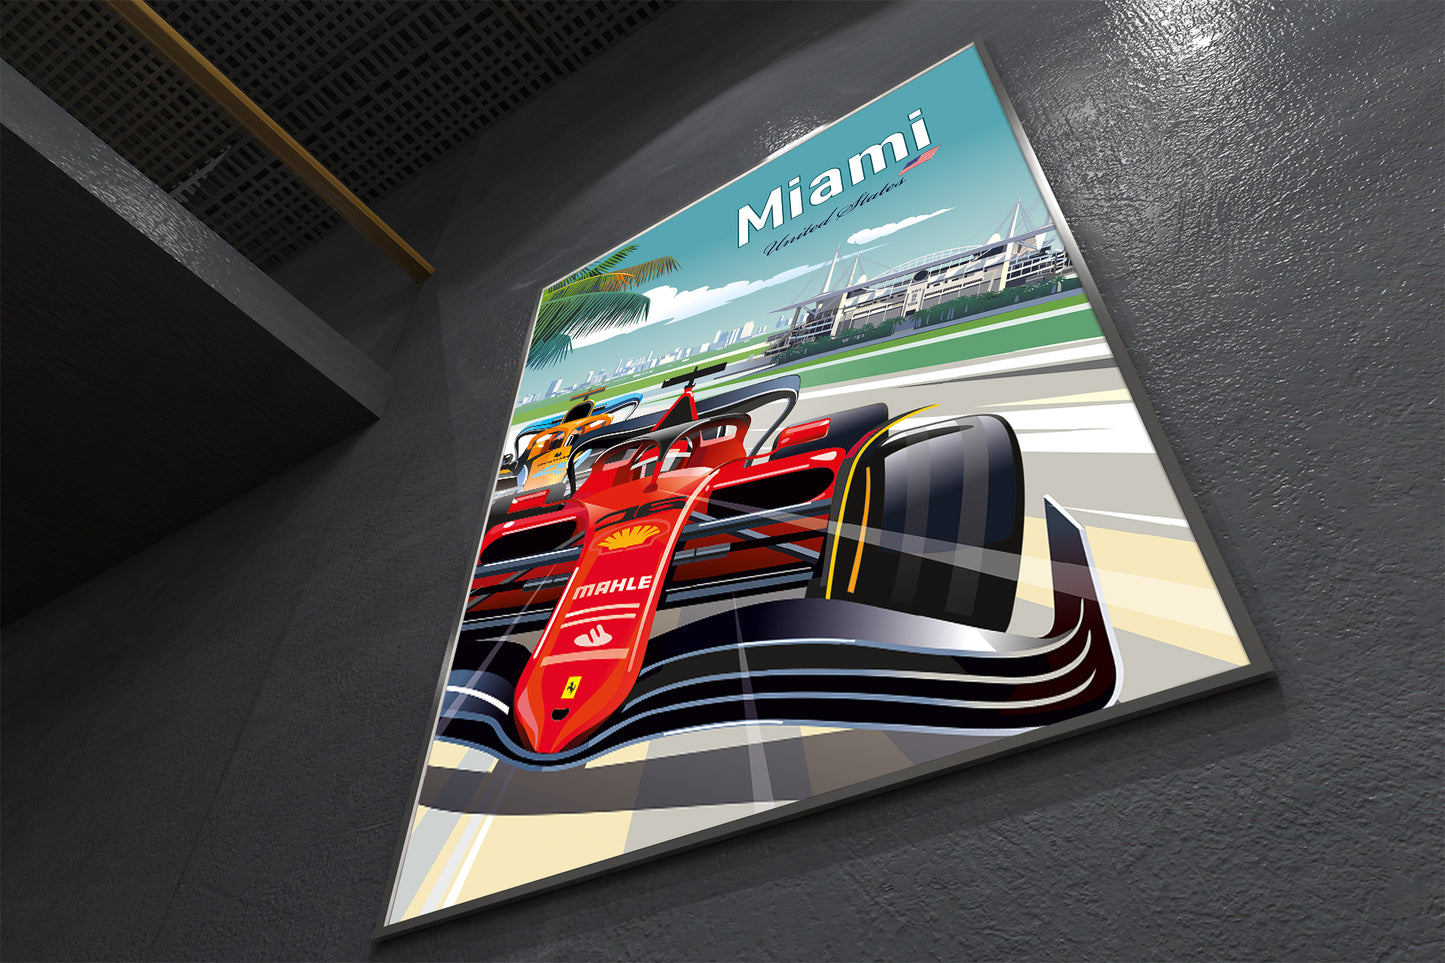 Miami F1 Poster / Formula1 Print / Ferrari F1 /  F1 Miami Circuit / F1 Gift